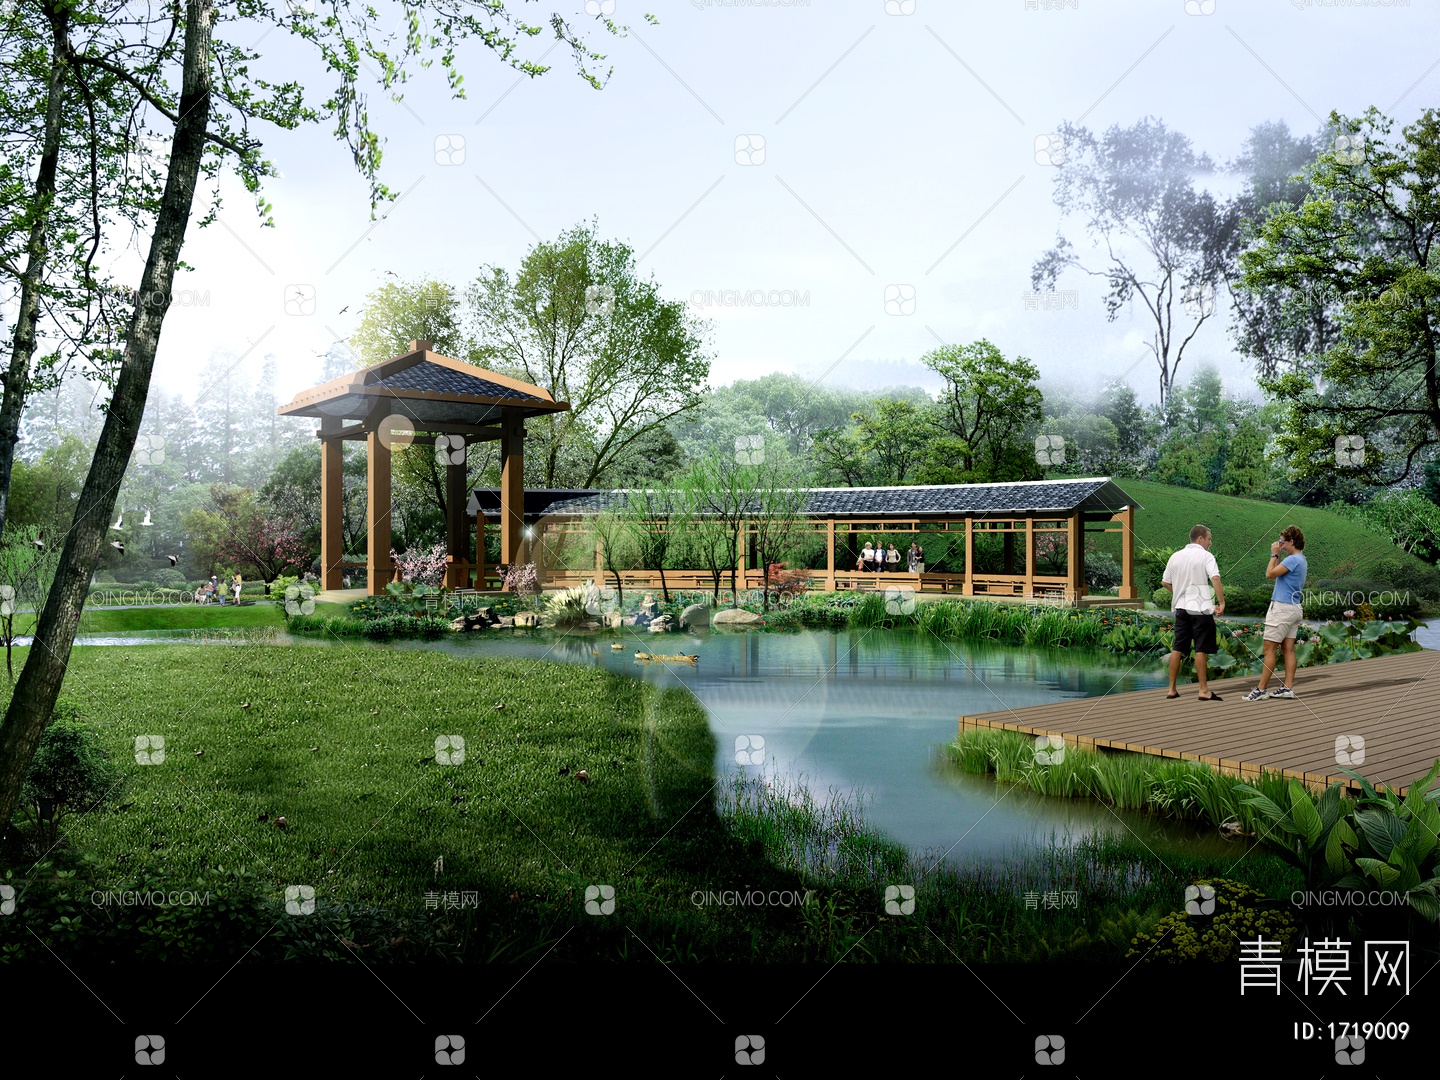 小庭院设计效果图一张-大图的图片浏览,园林效果图,花园庭院,园林景观设计施工图纸资料下载_定鼎园林